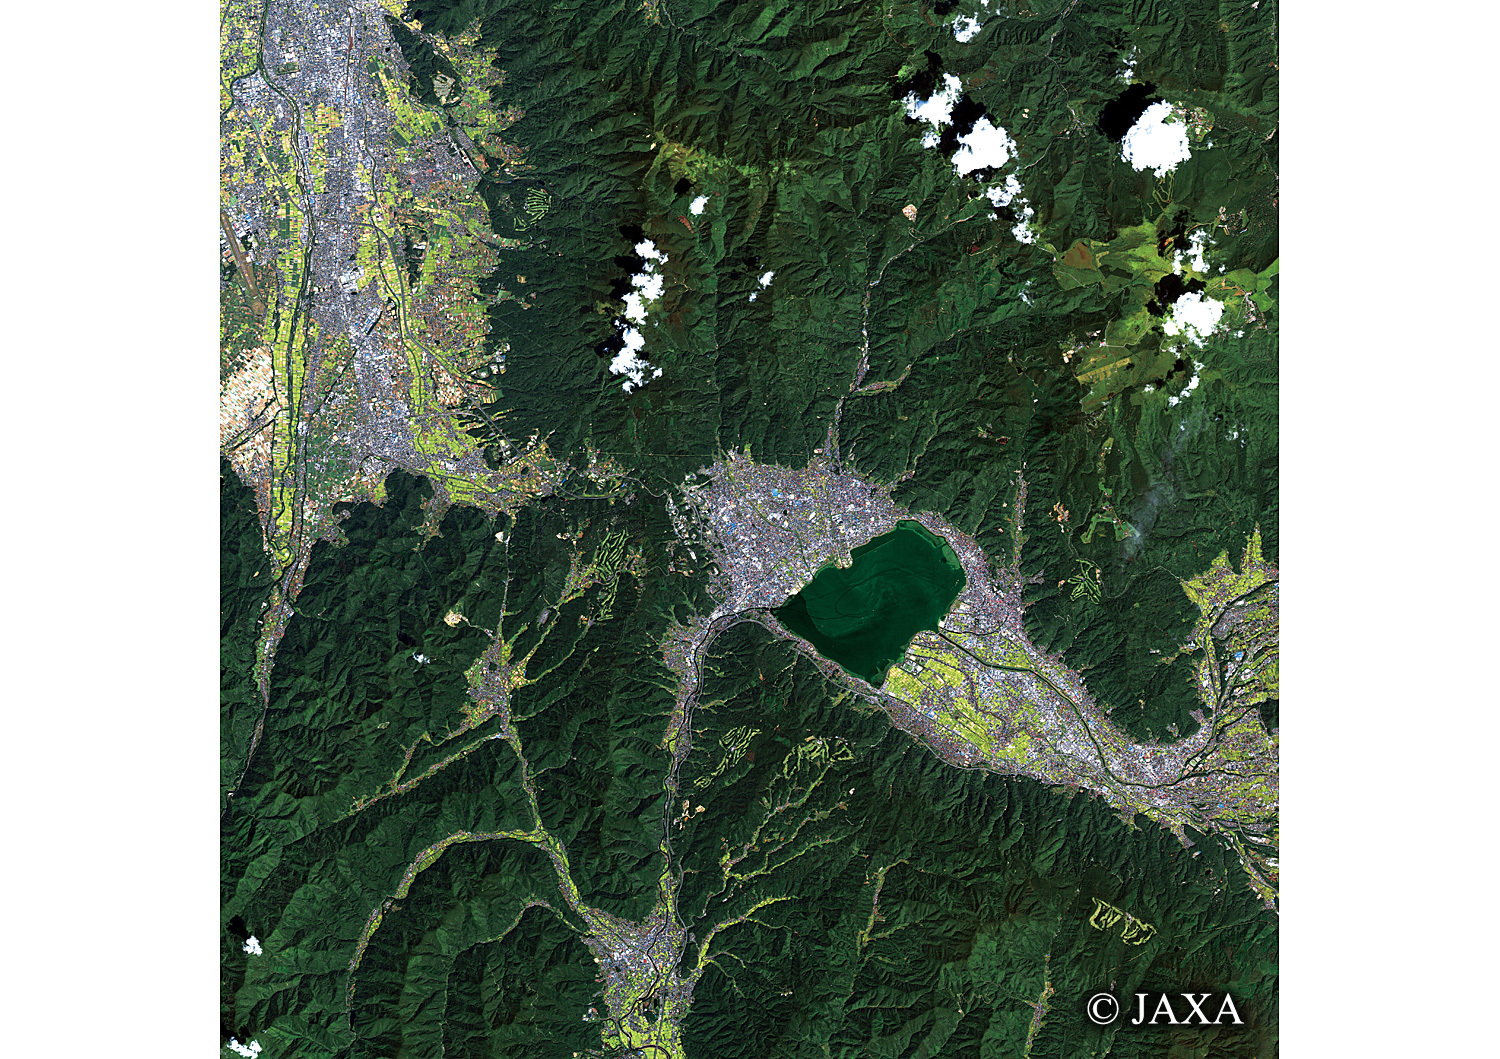 だいちから見た日本の都市 下諏訪町:衛星画像